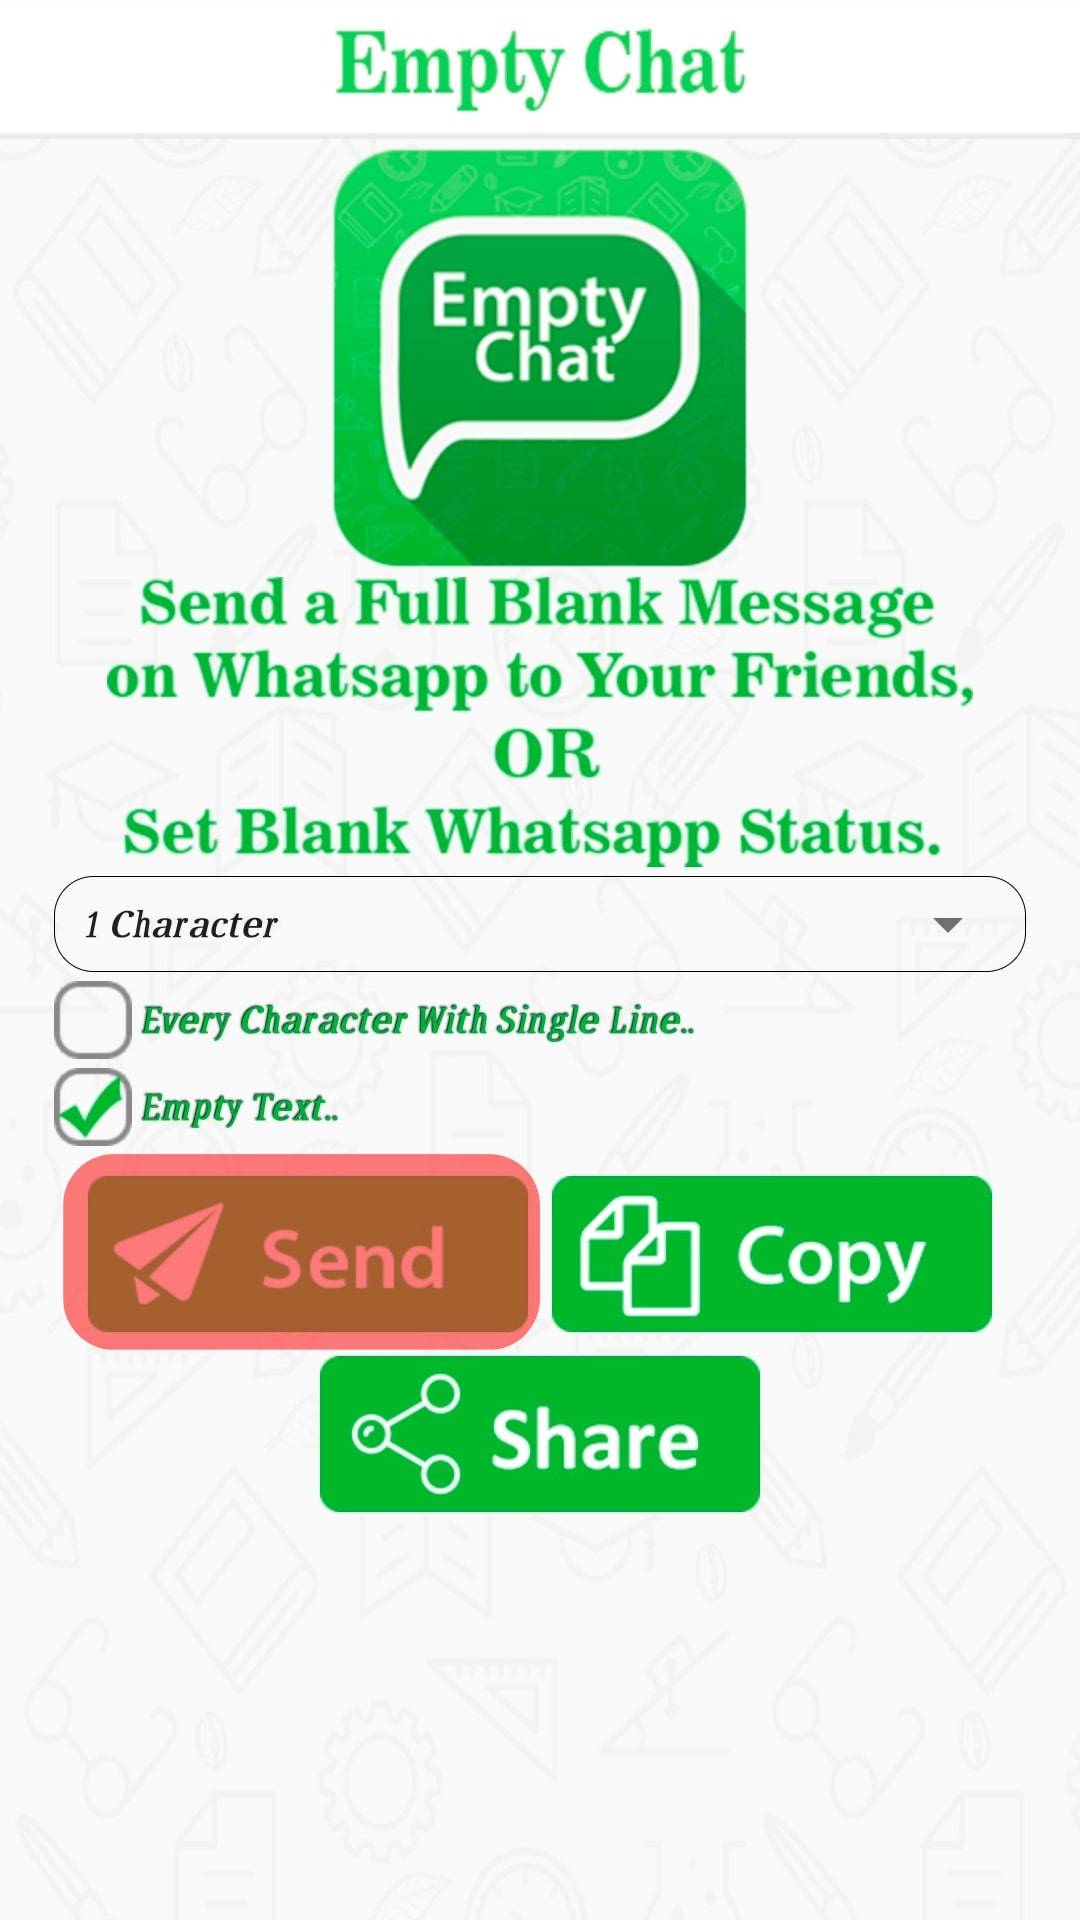 CÃ³mo enviar mensajes en blanco en WhatsApp